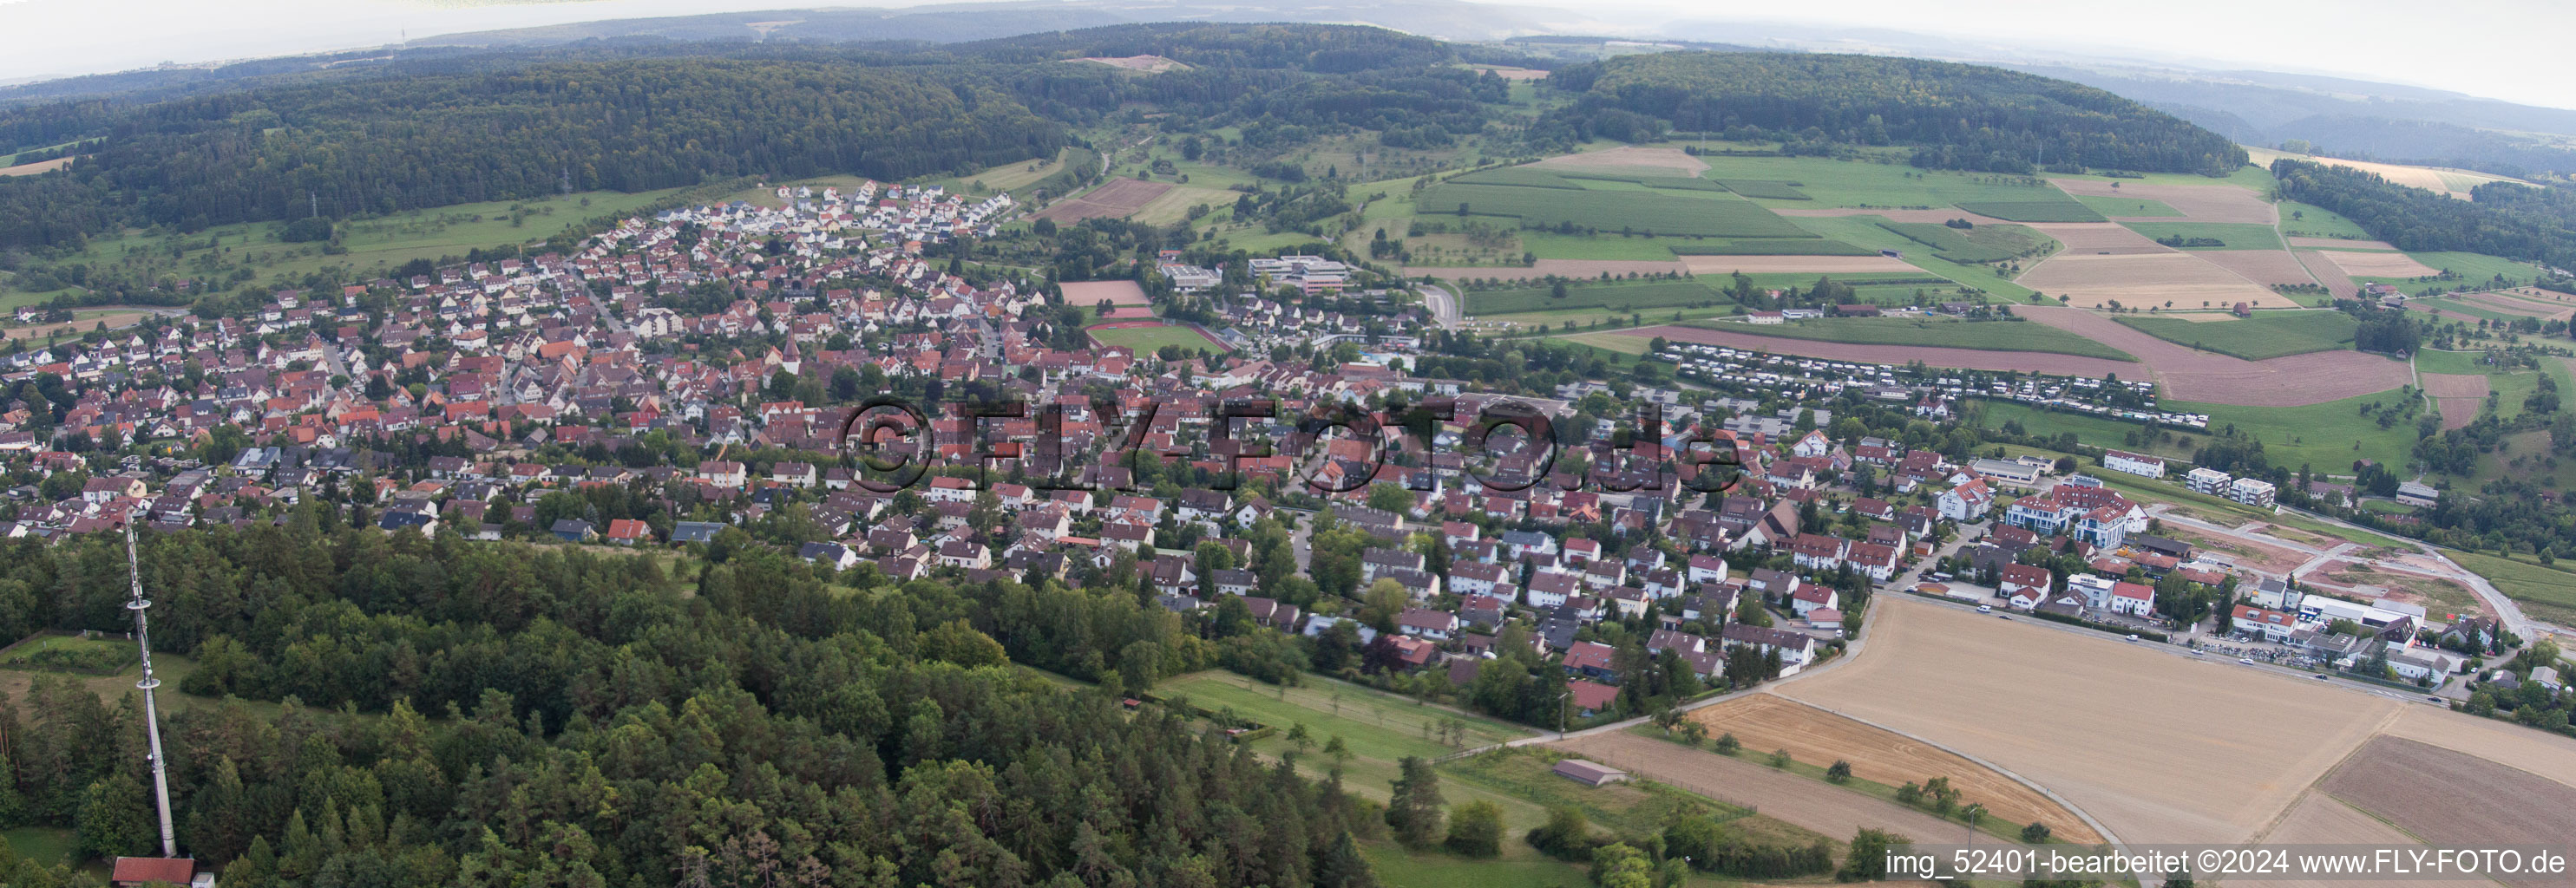 Vue aérienne de Panorama de la région et des environs dans le quartier de Stammheim à Calw dans le département Bade-Wurtemberg, Allemagne